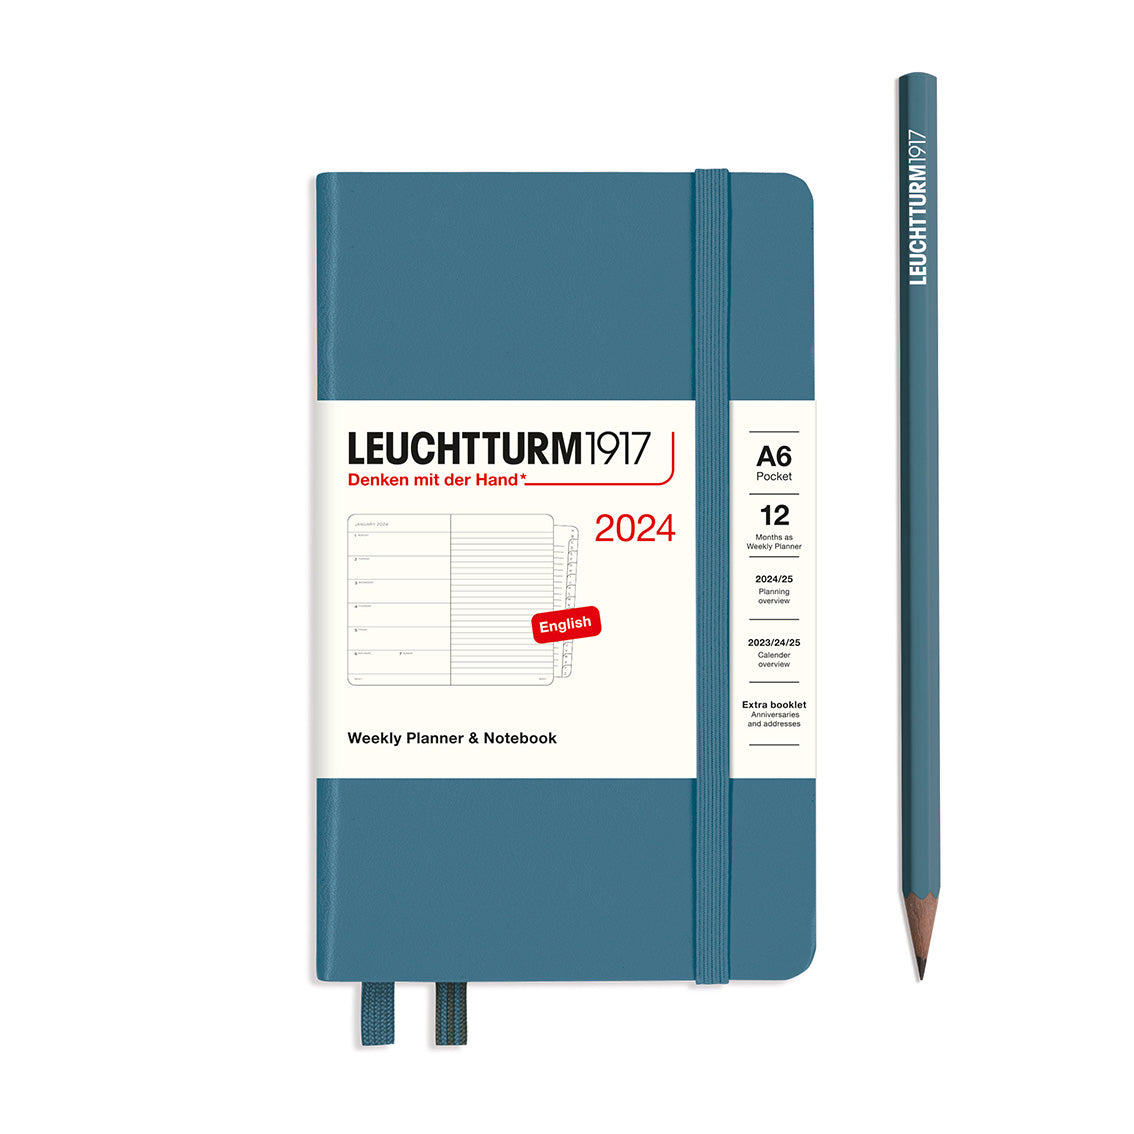 Leuchtturm Weekly Planner & Notebook - Pocket (A6) 3 1/2" x 6"